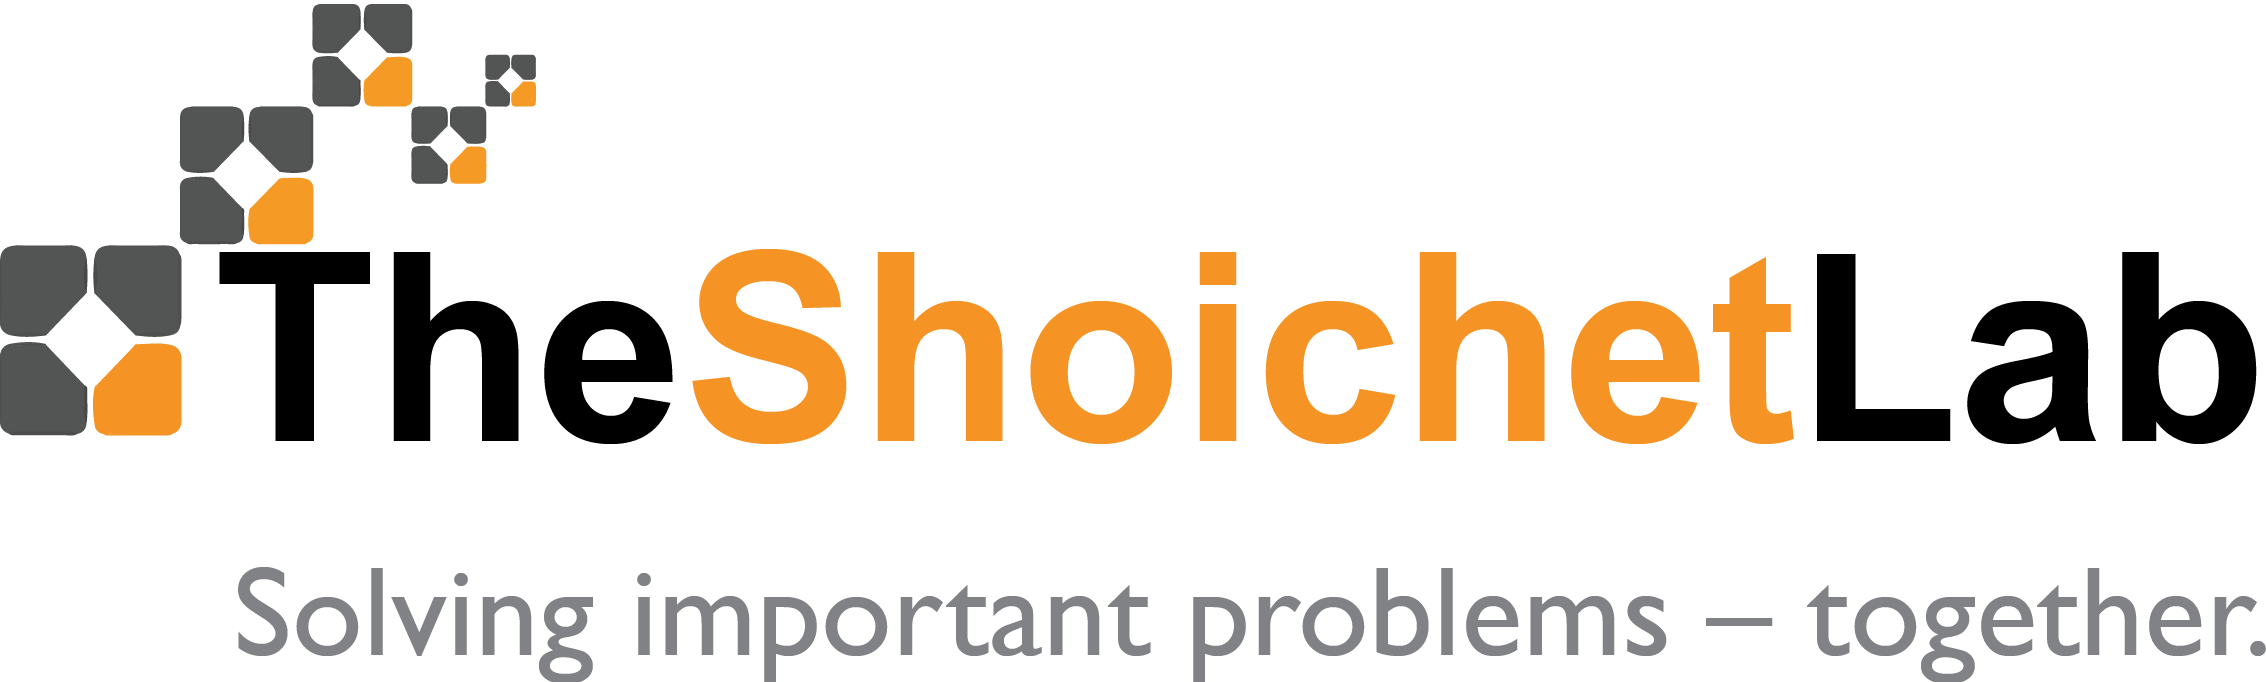 Shoichet Lab